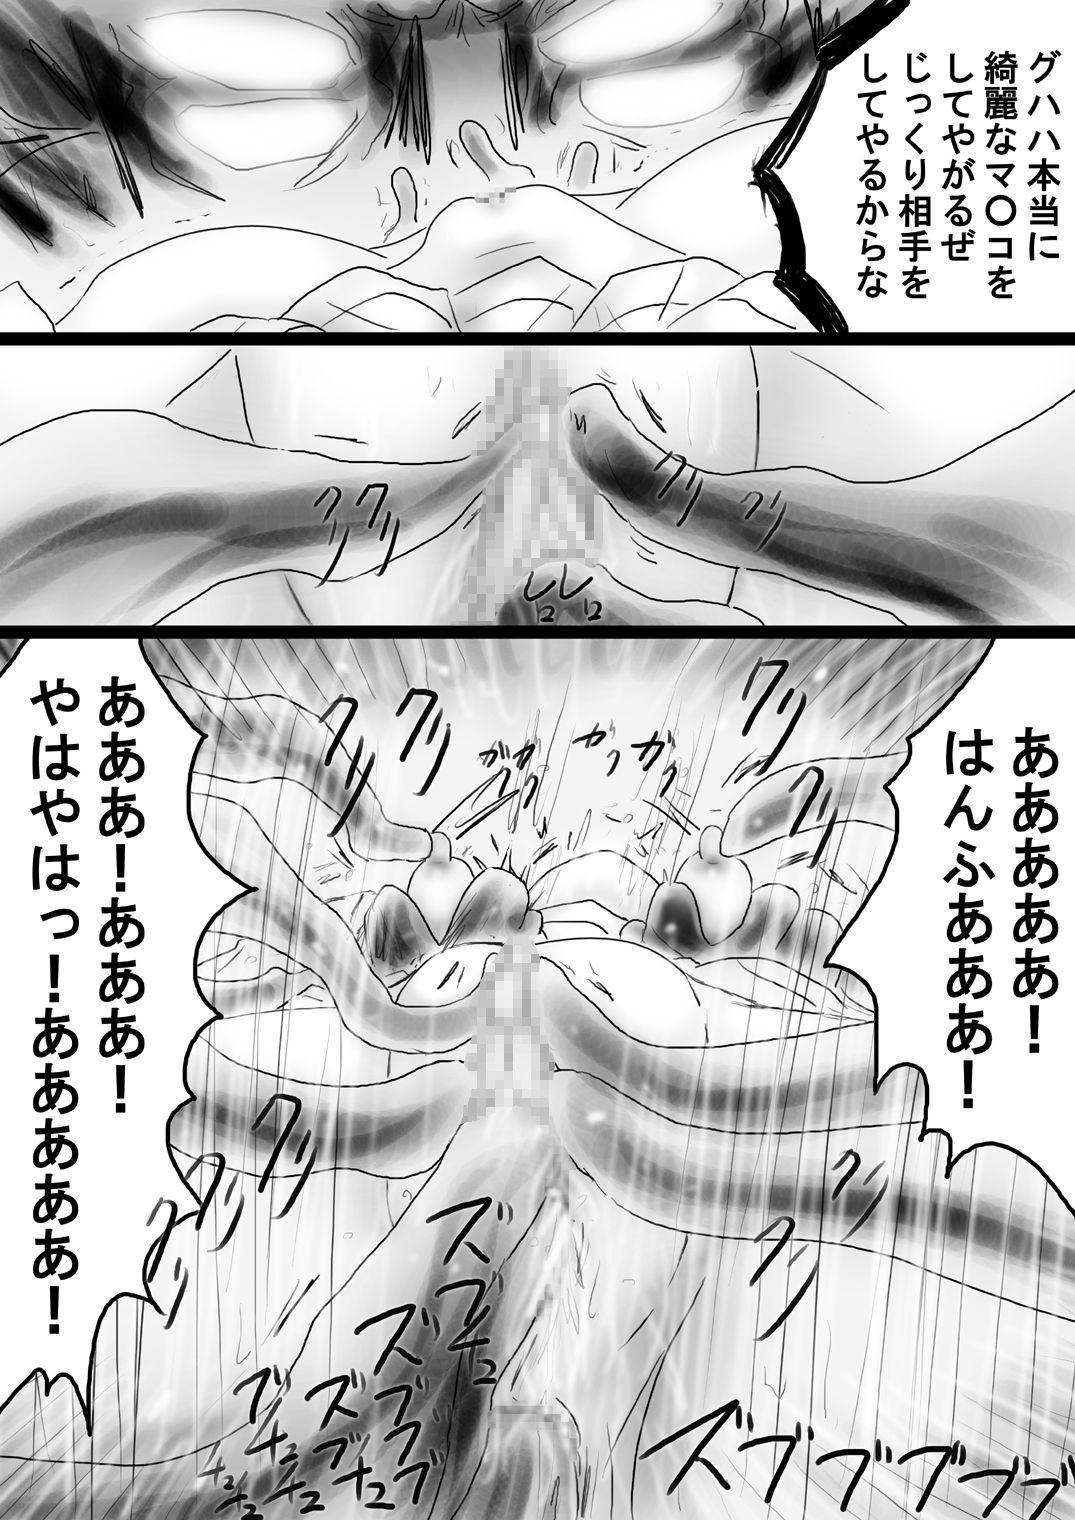 [Dende] Fushigi Sekai -Mystery World- Nonona 35 ~Nonona vs Shi no Daimaou Negaronjigiba, Yosougai no Kyoufu Muryokuka Kutsujoku Kyoukan Ingoku~ 155